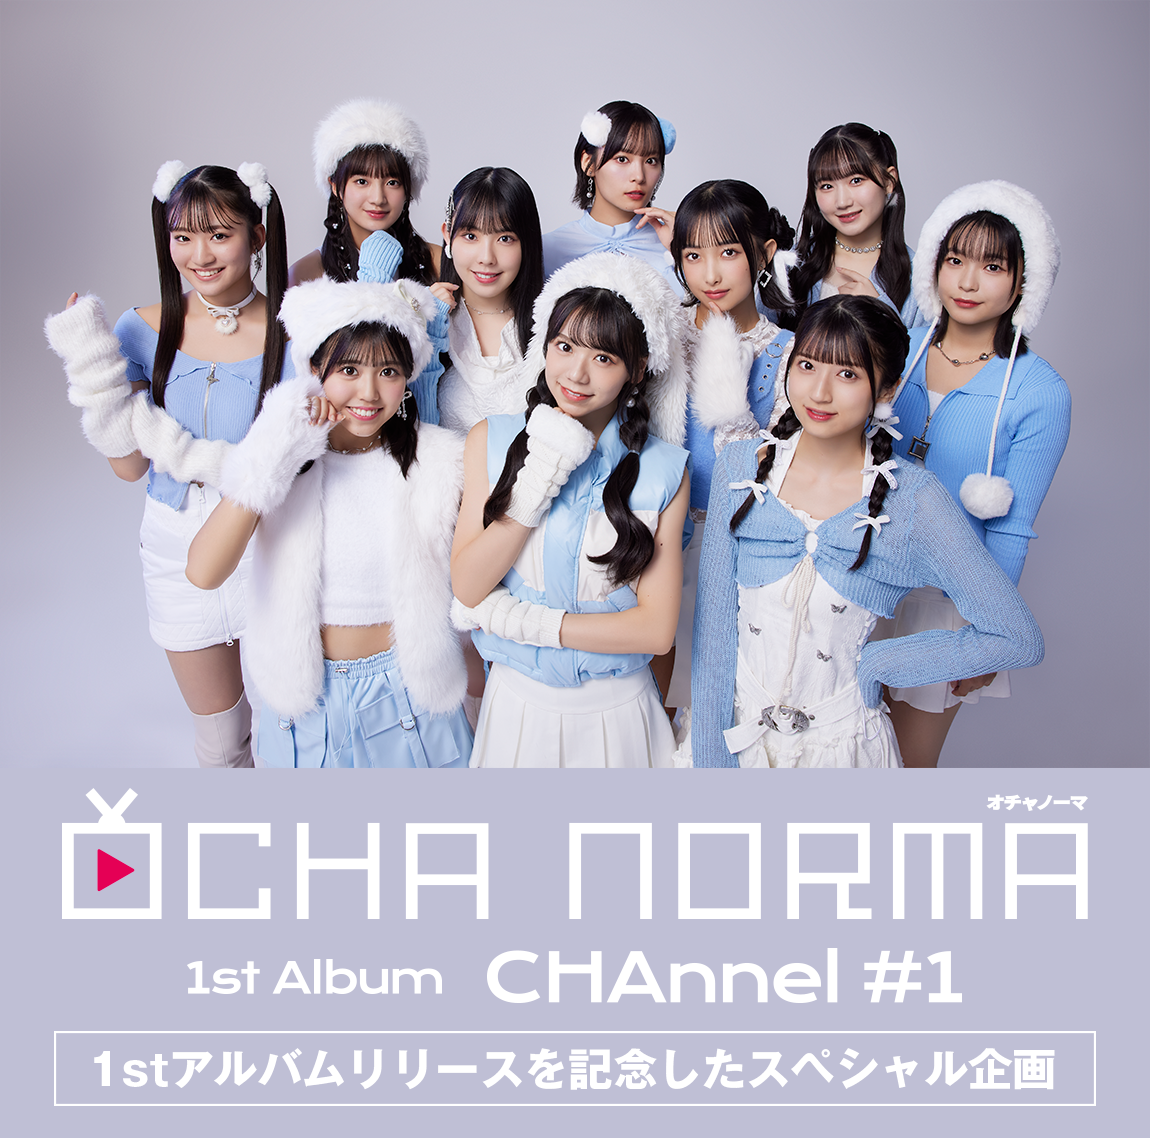 OCHA NORMA 1stアルバム「CHAnnel #1」 通常版どうぞよろしくお願いいたします